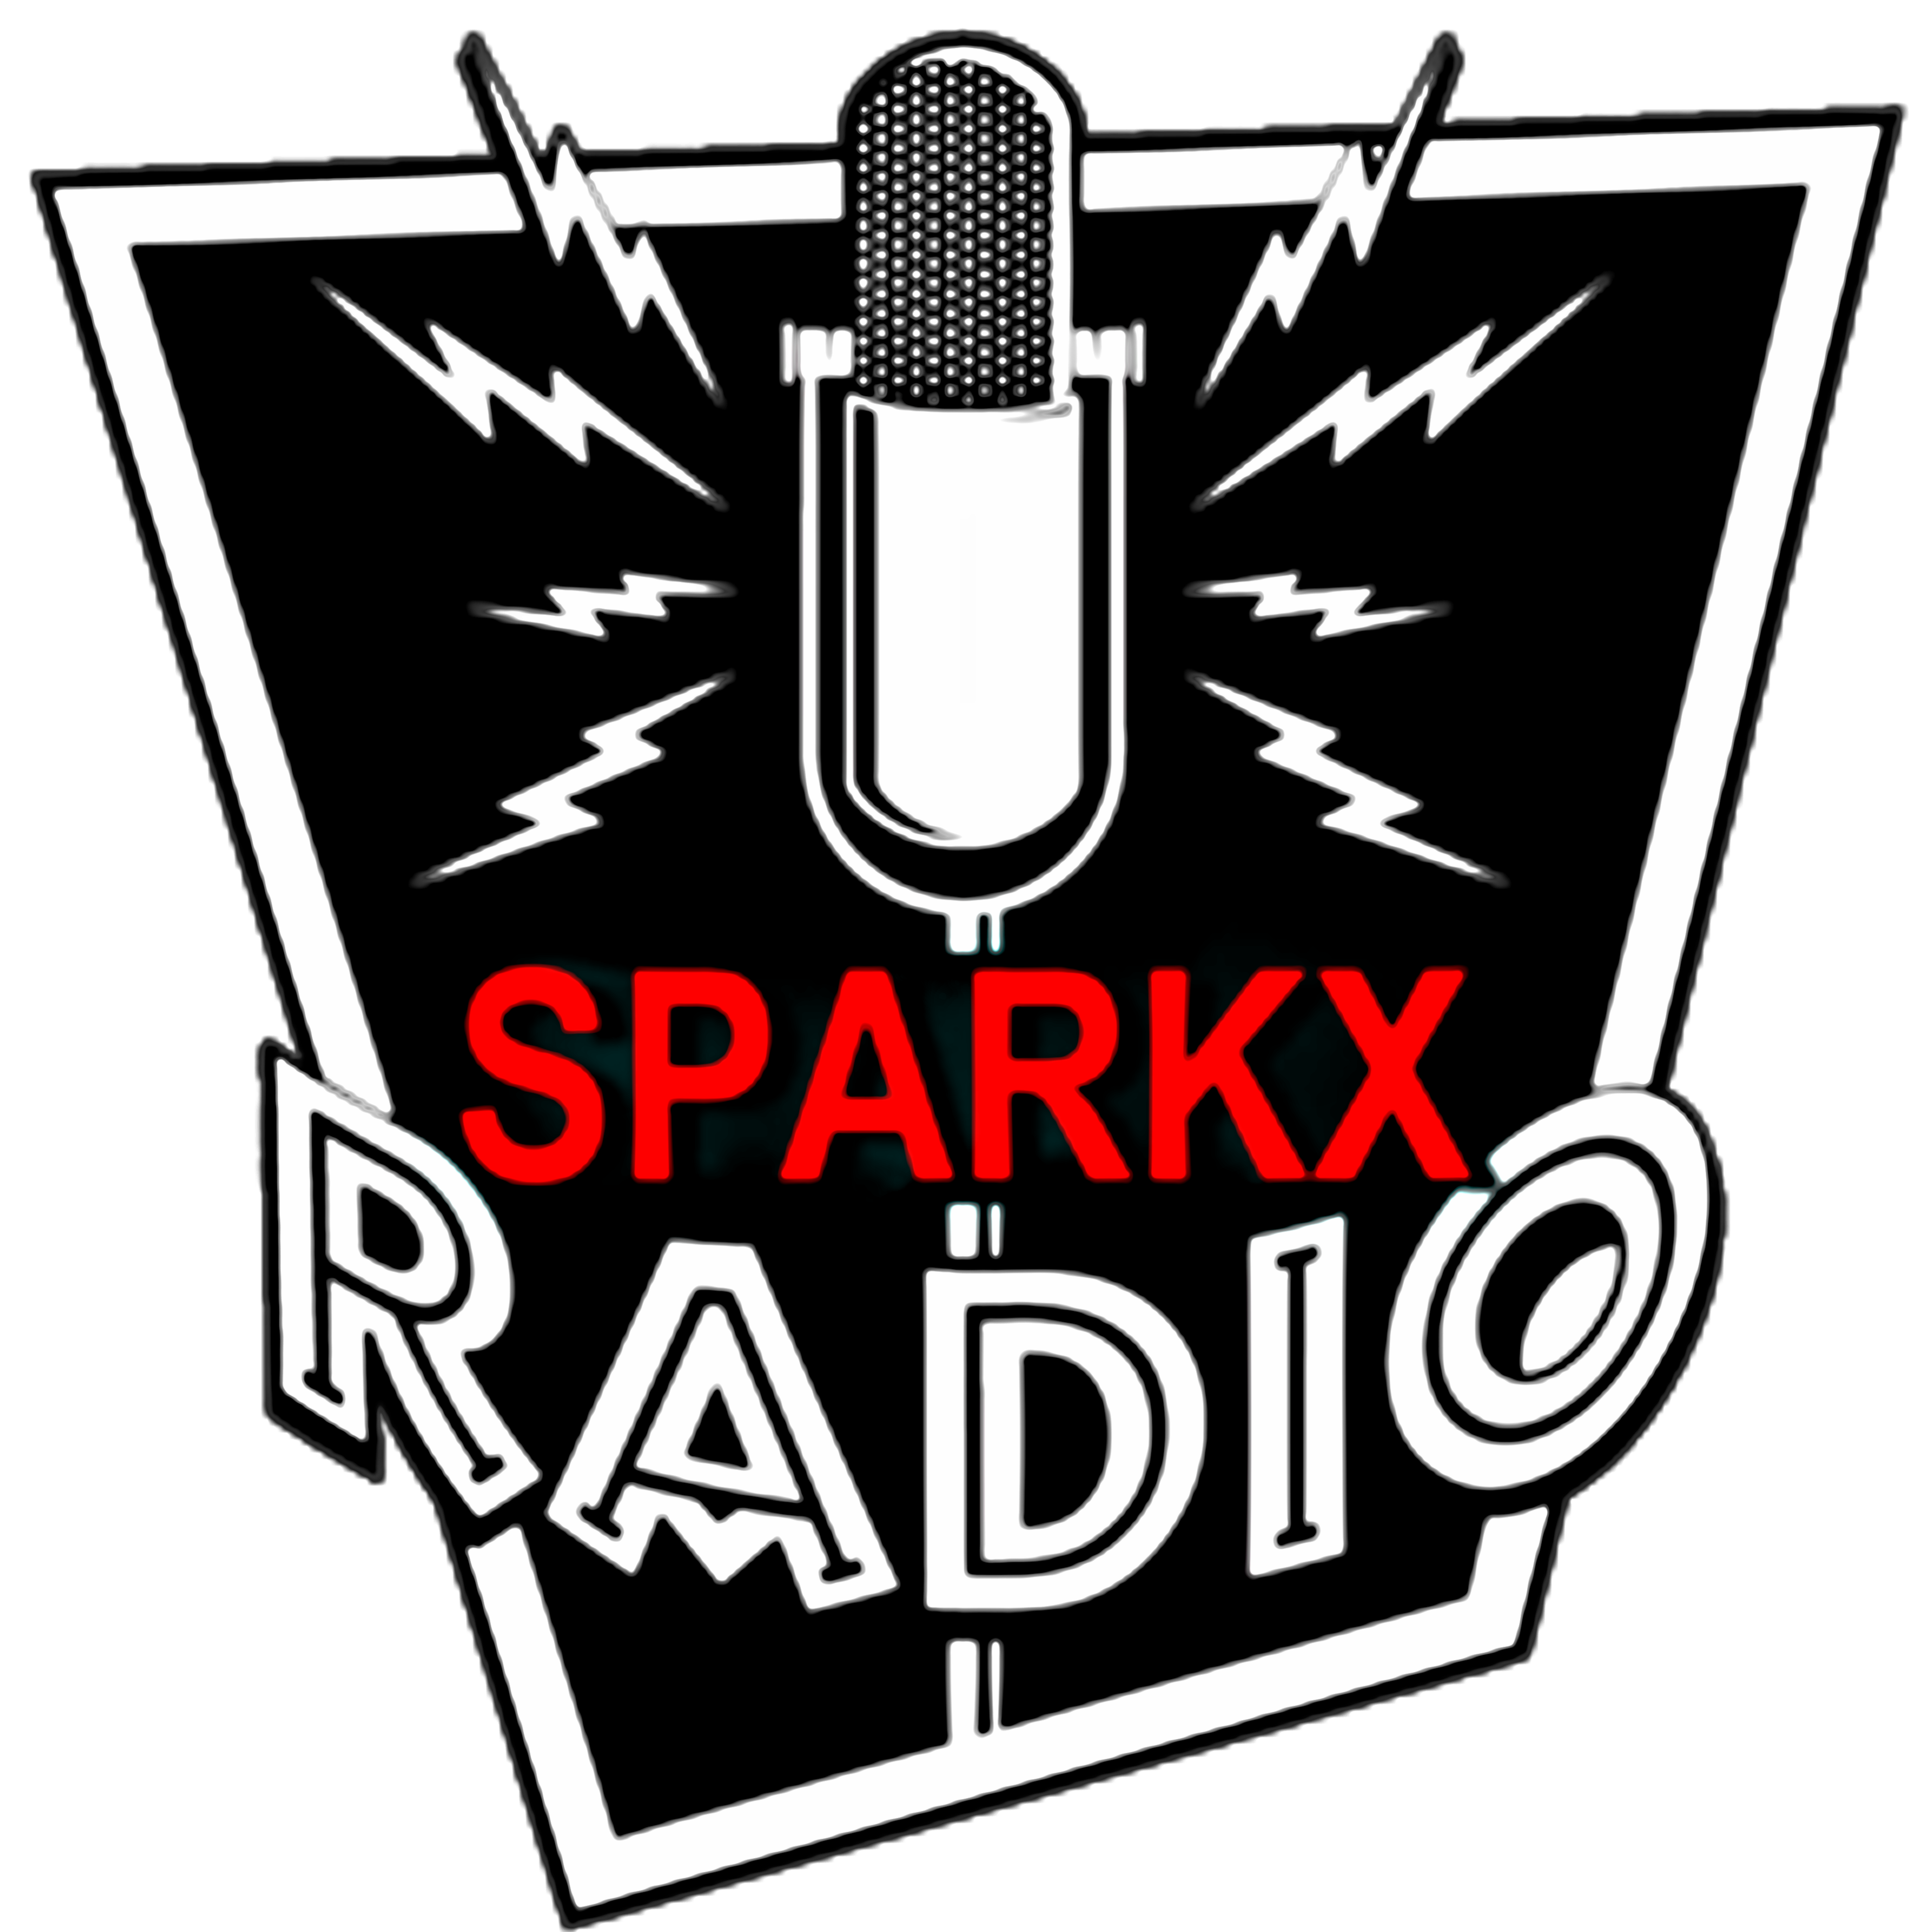 Sparkx Radio Station